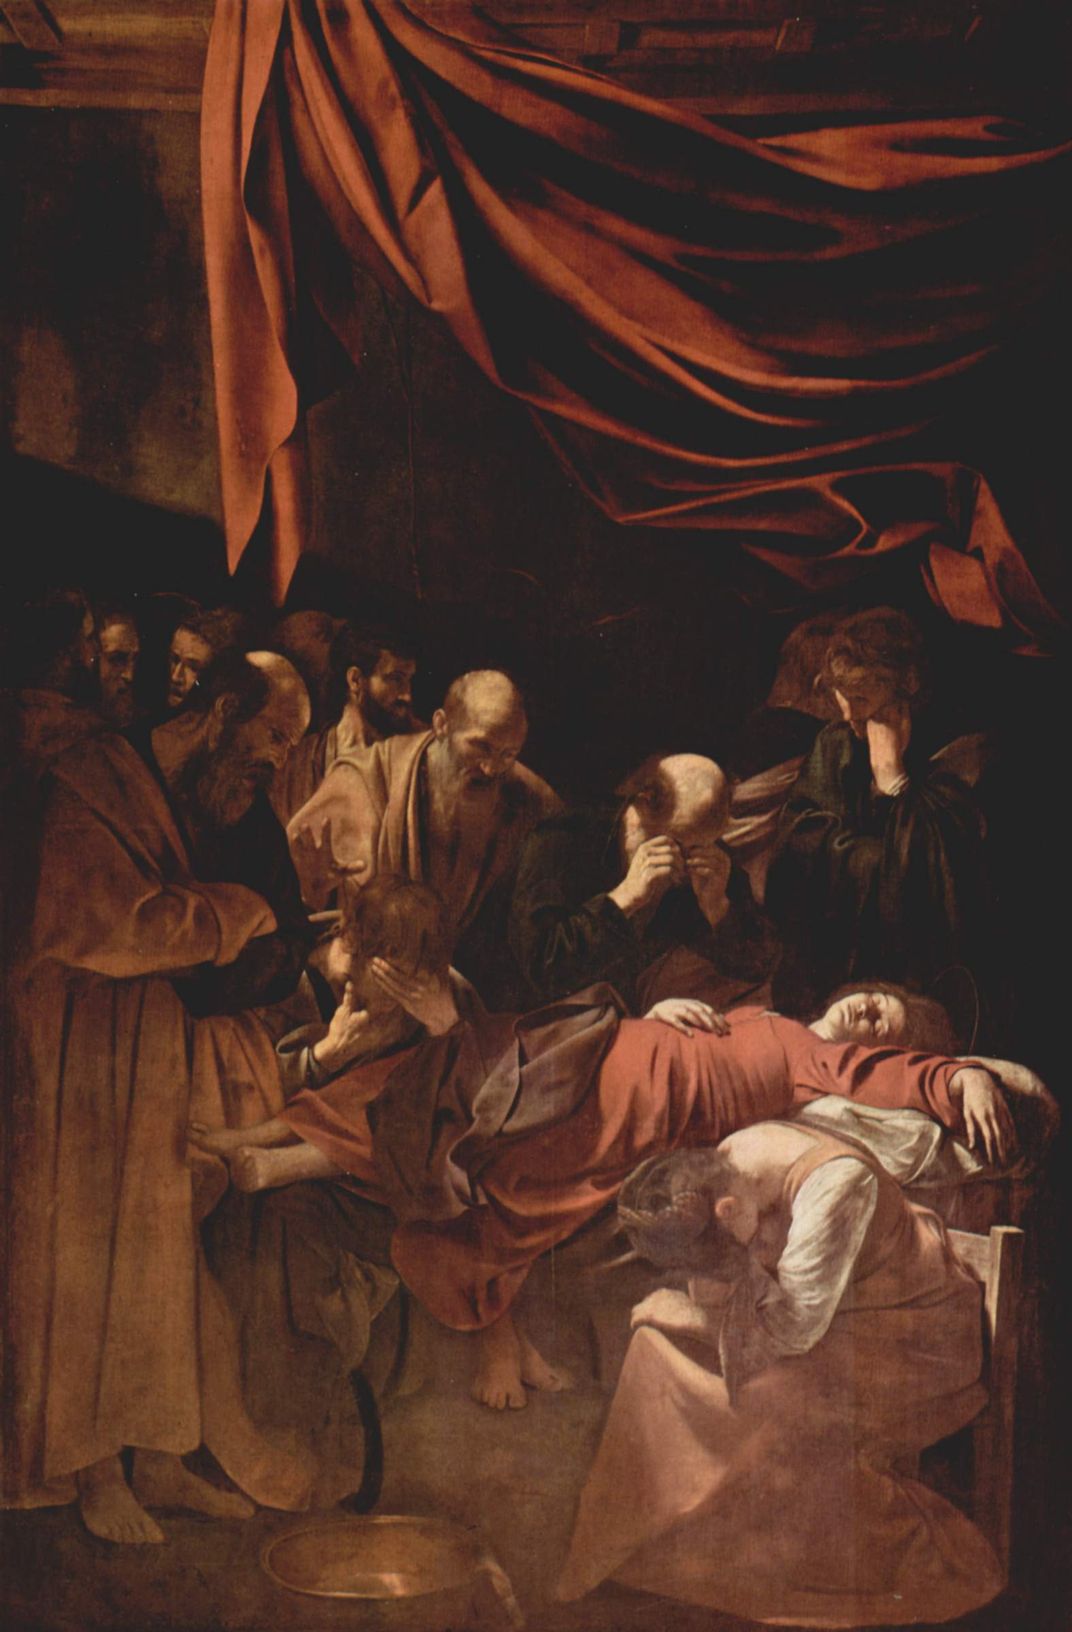 Death of a Virgin, Caravaggio